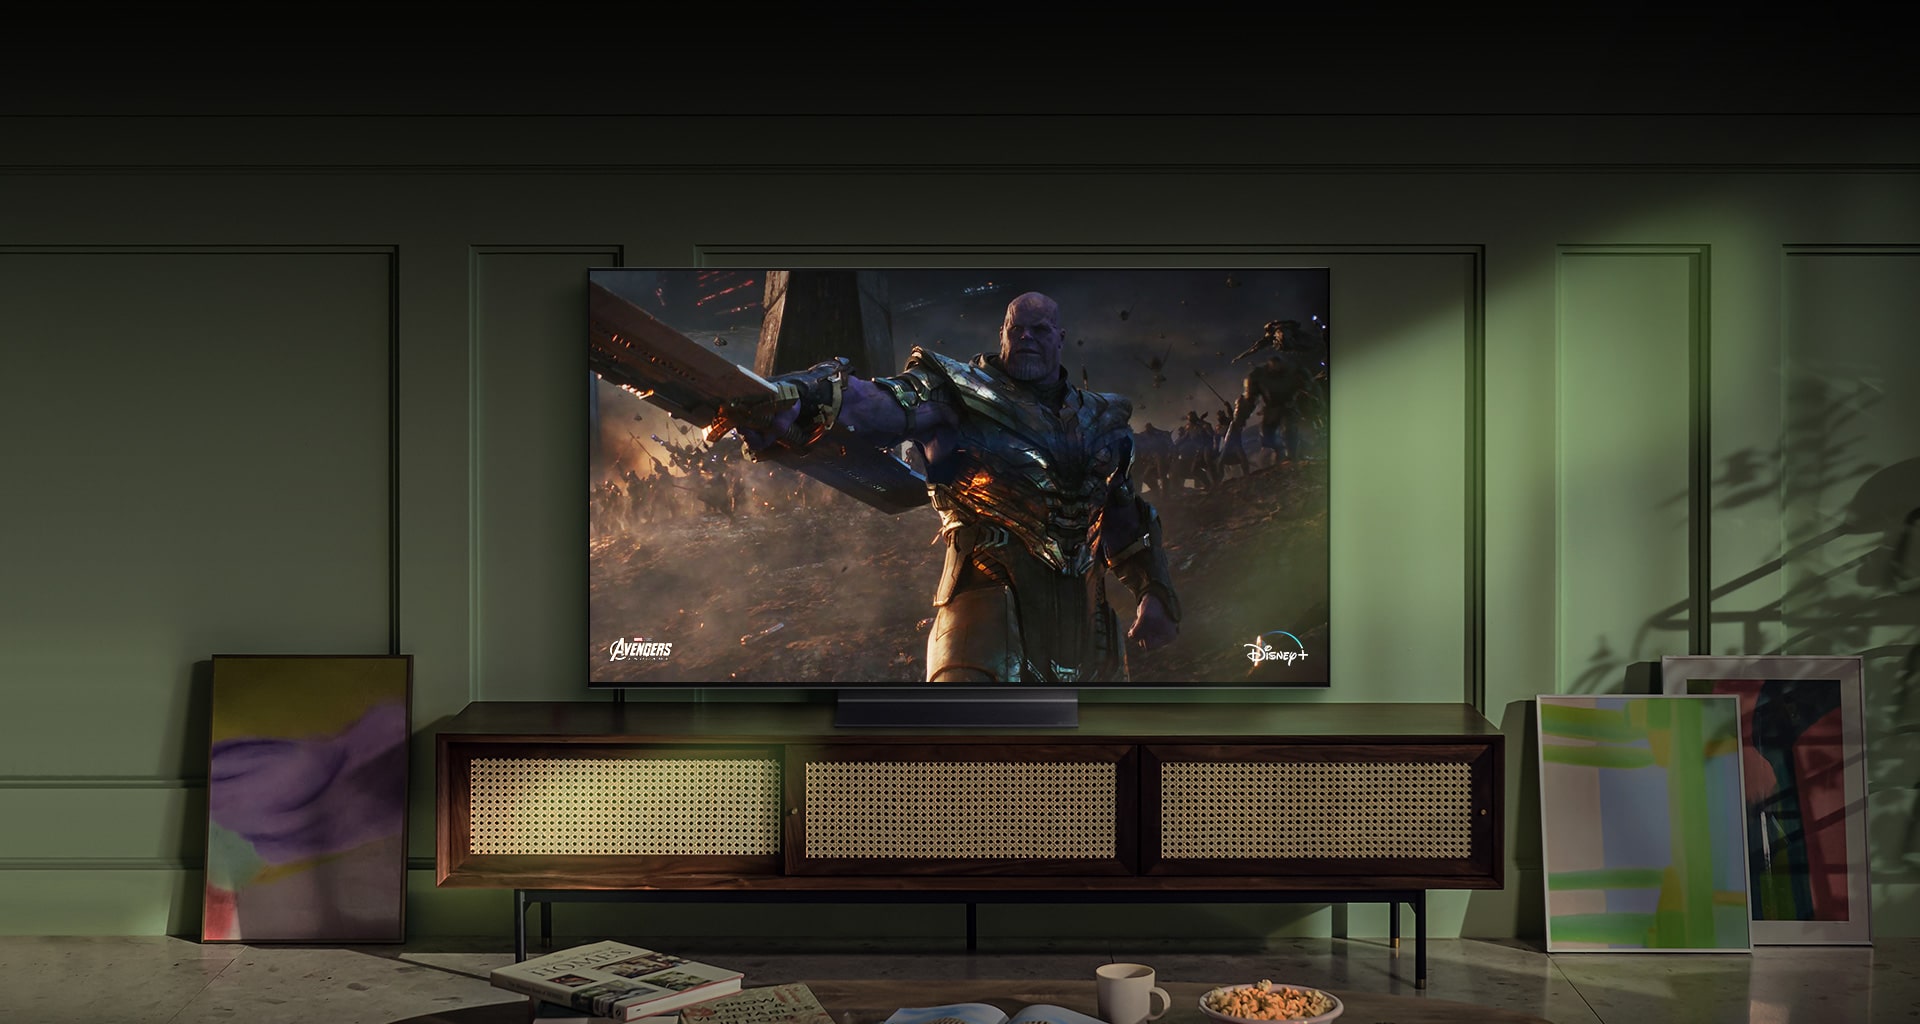 Suuri seinään kiinnitetty LG OLED -televisio näyttää toimintaelokuvan kohtauksen